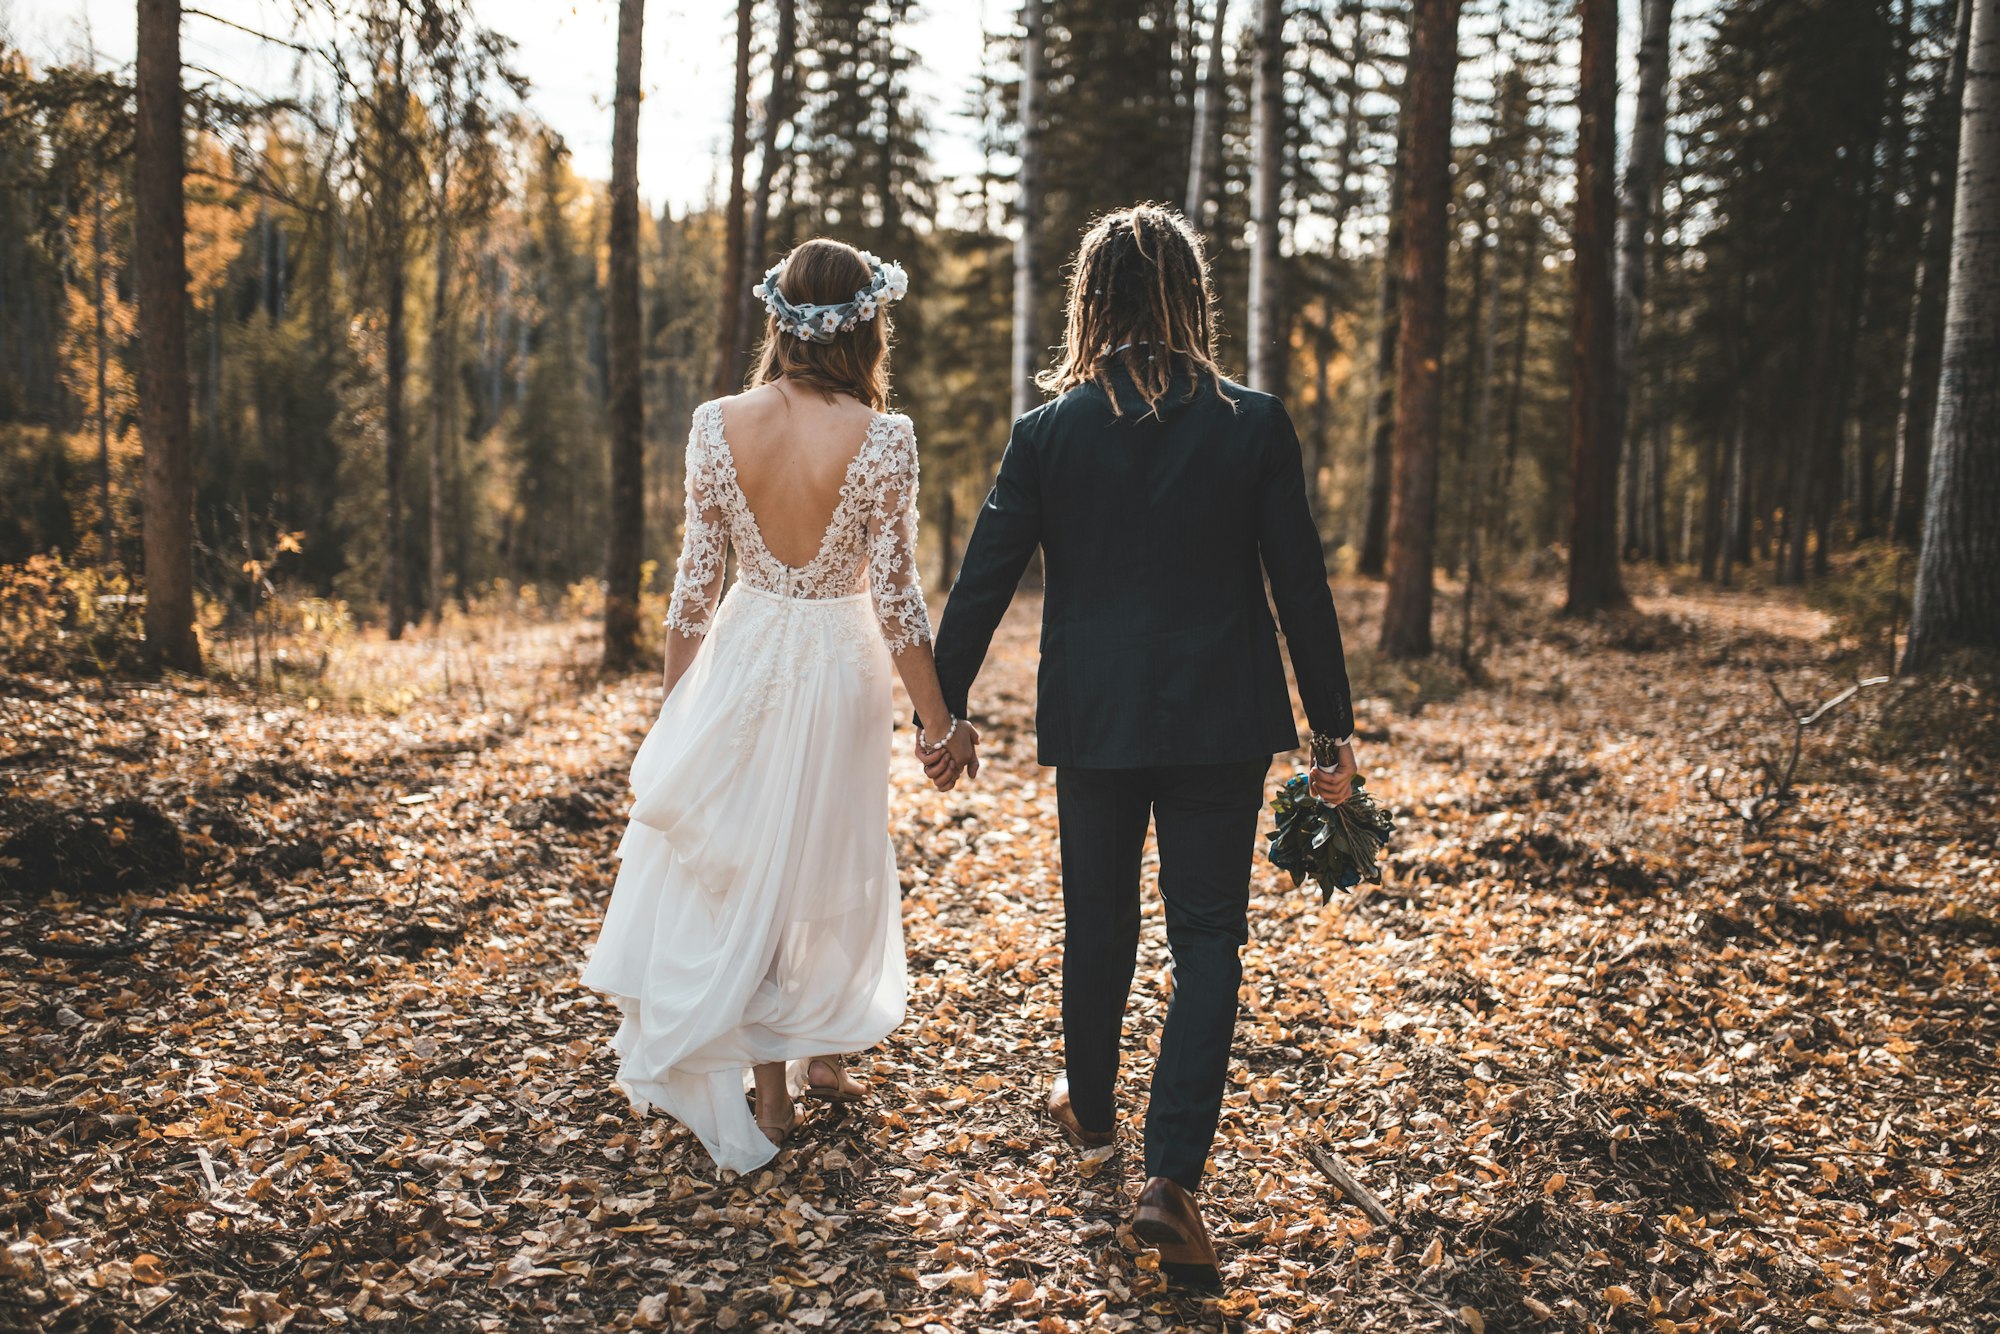 Matrimonio a tema favole: il bosco incantato